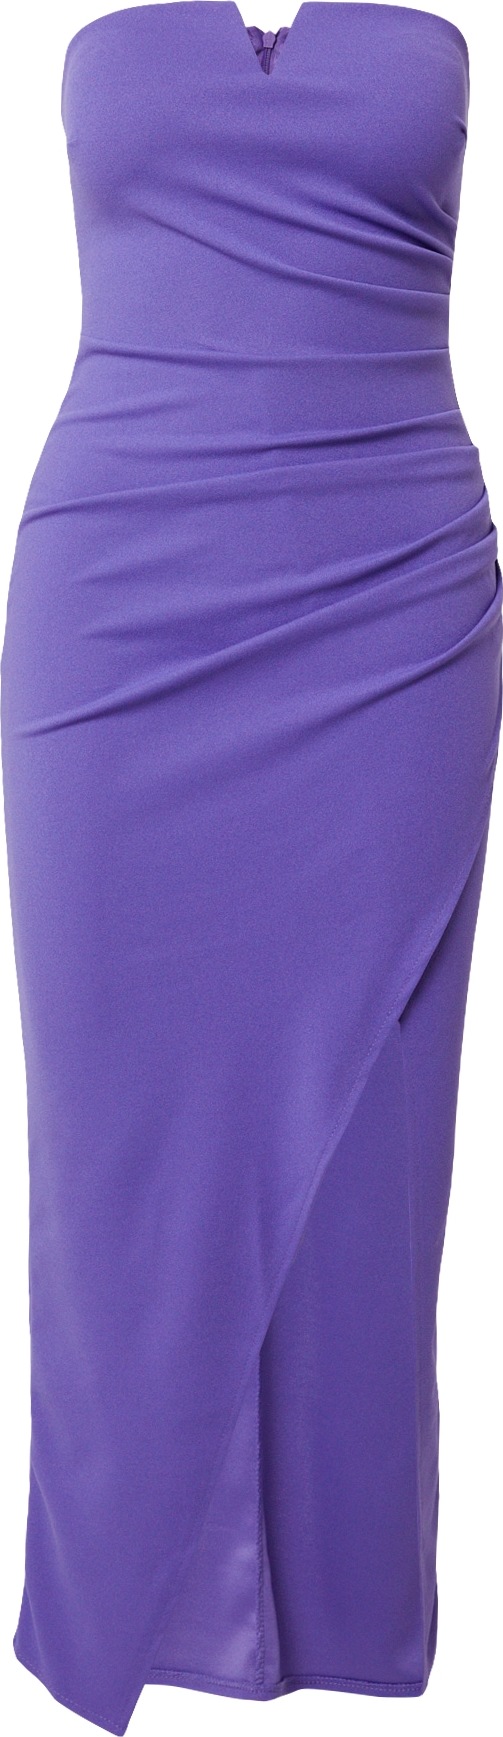 Šaty 'GINA' WAL G. tmavě fialová